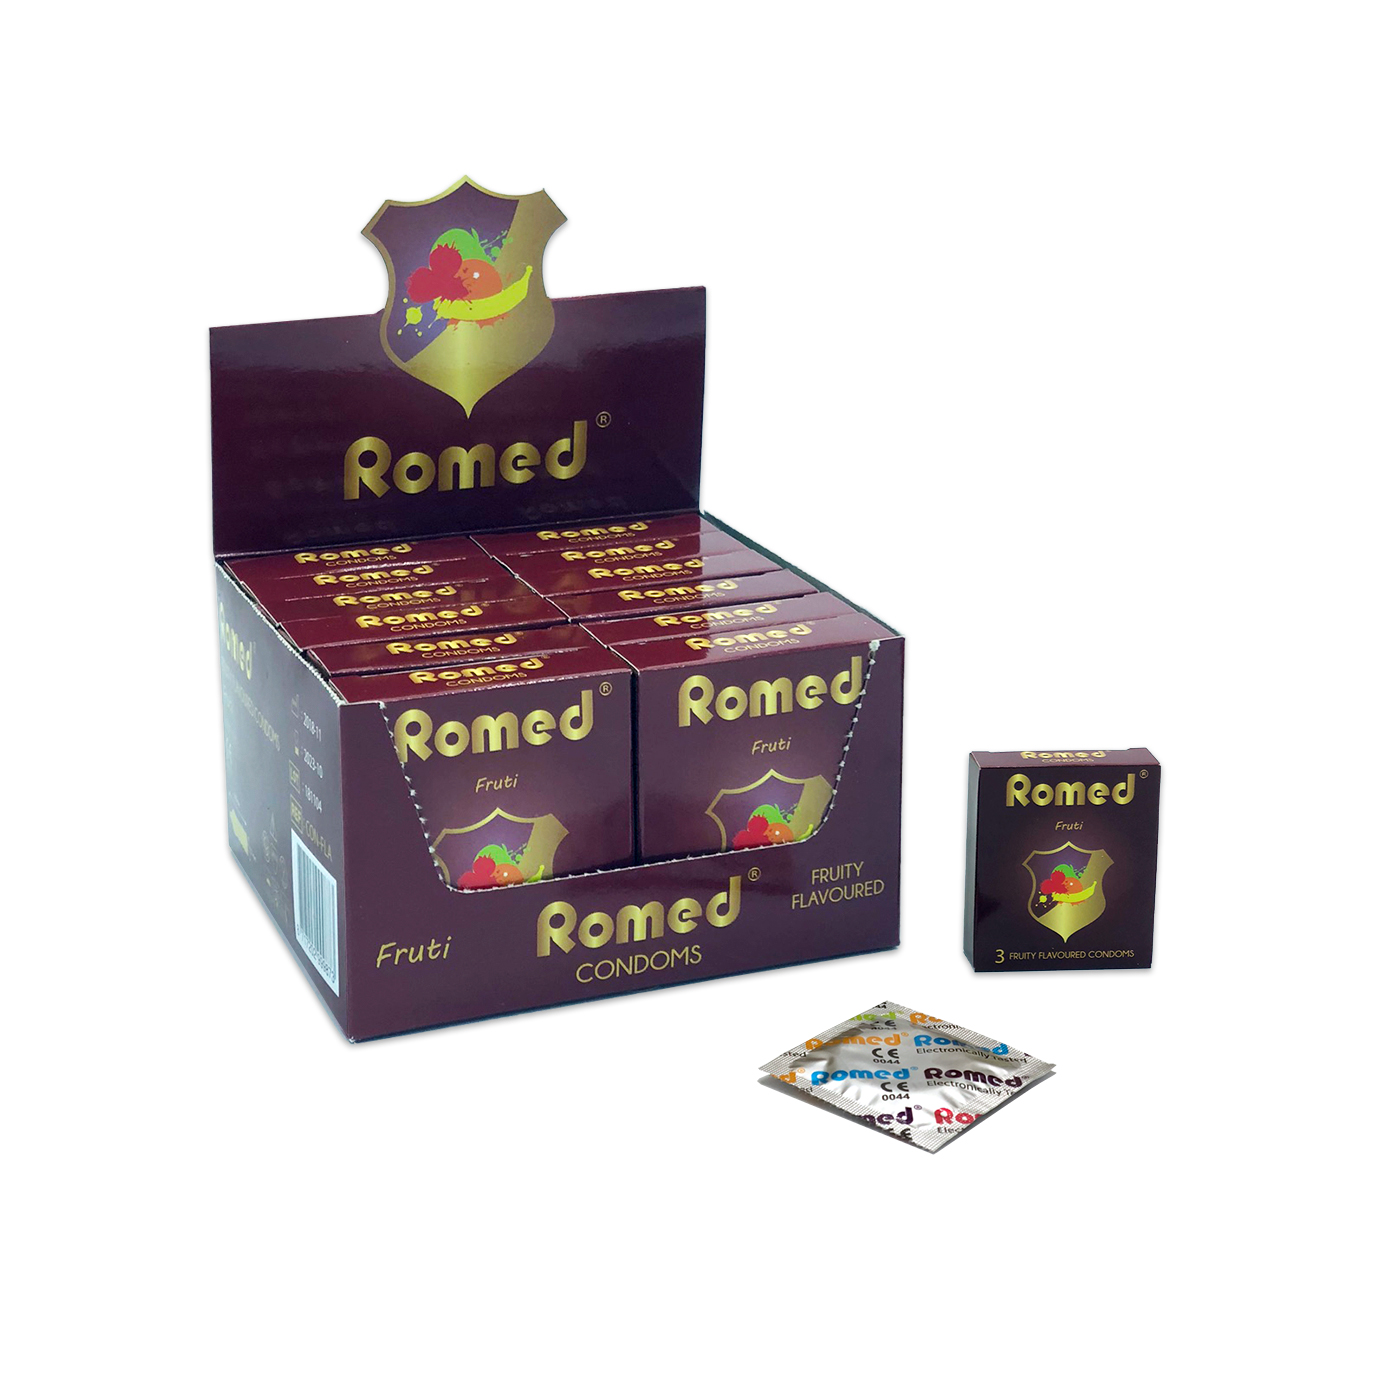 CON-FLA Romed Kondome mit Geschmack, Streifen zu 3 Stück in einem Päckchen, in Cellophan, 48 Päckchen = 144 Stück in einer Schachtel (= 1 Gros), 30 x 144 Stück = 4.320 Stück im Karton.